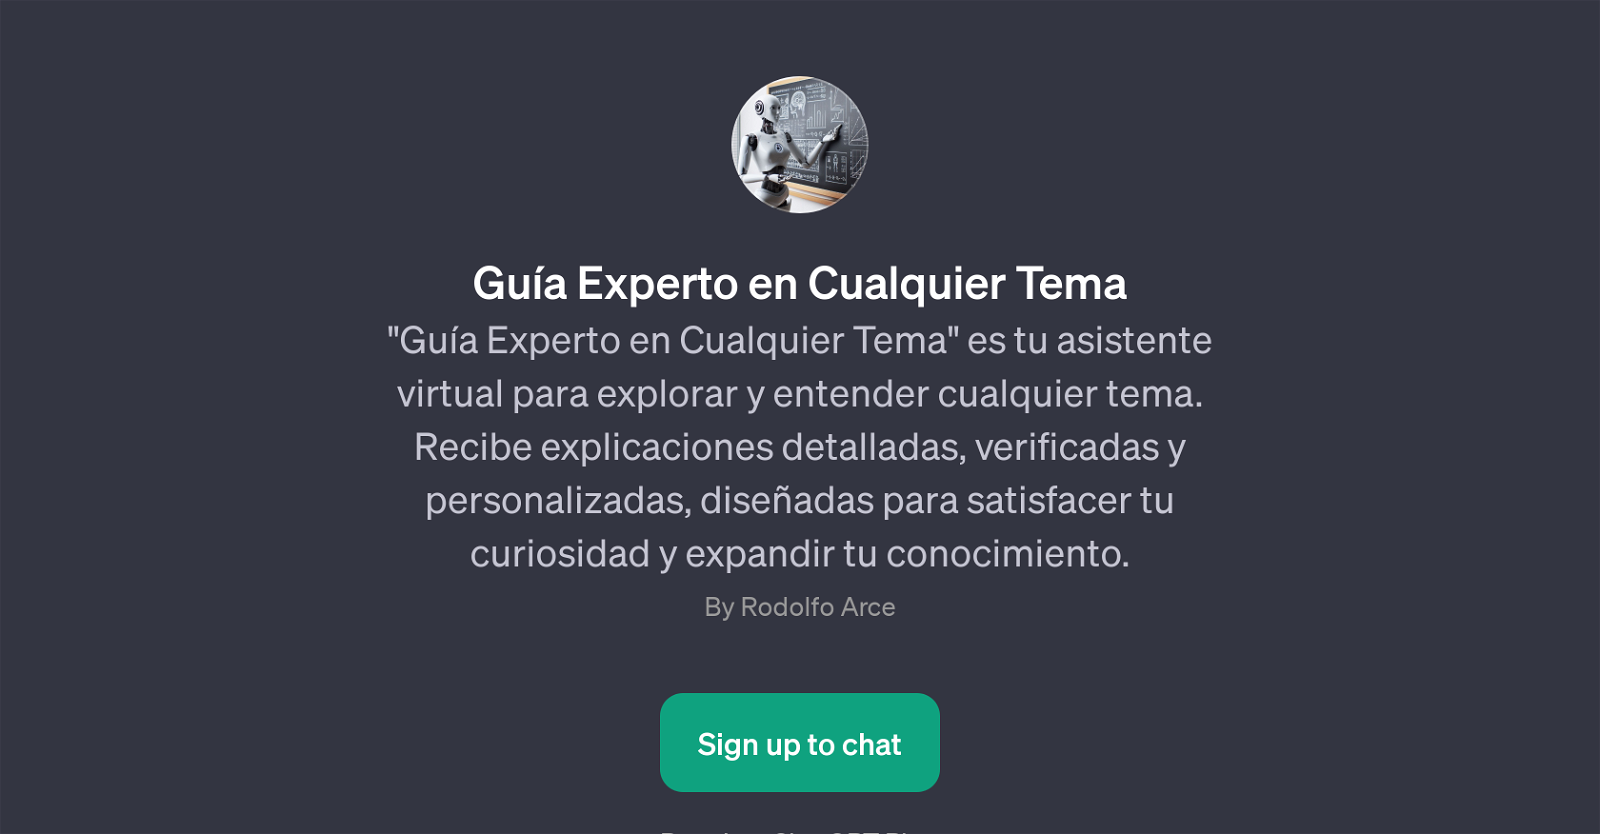 Gua Experto en Cualquier Tema website